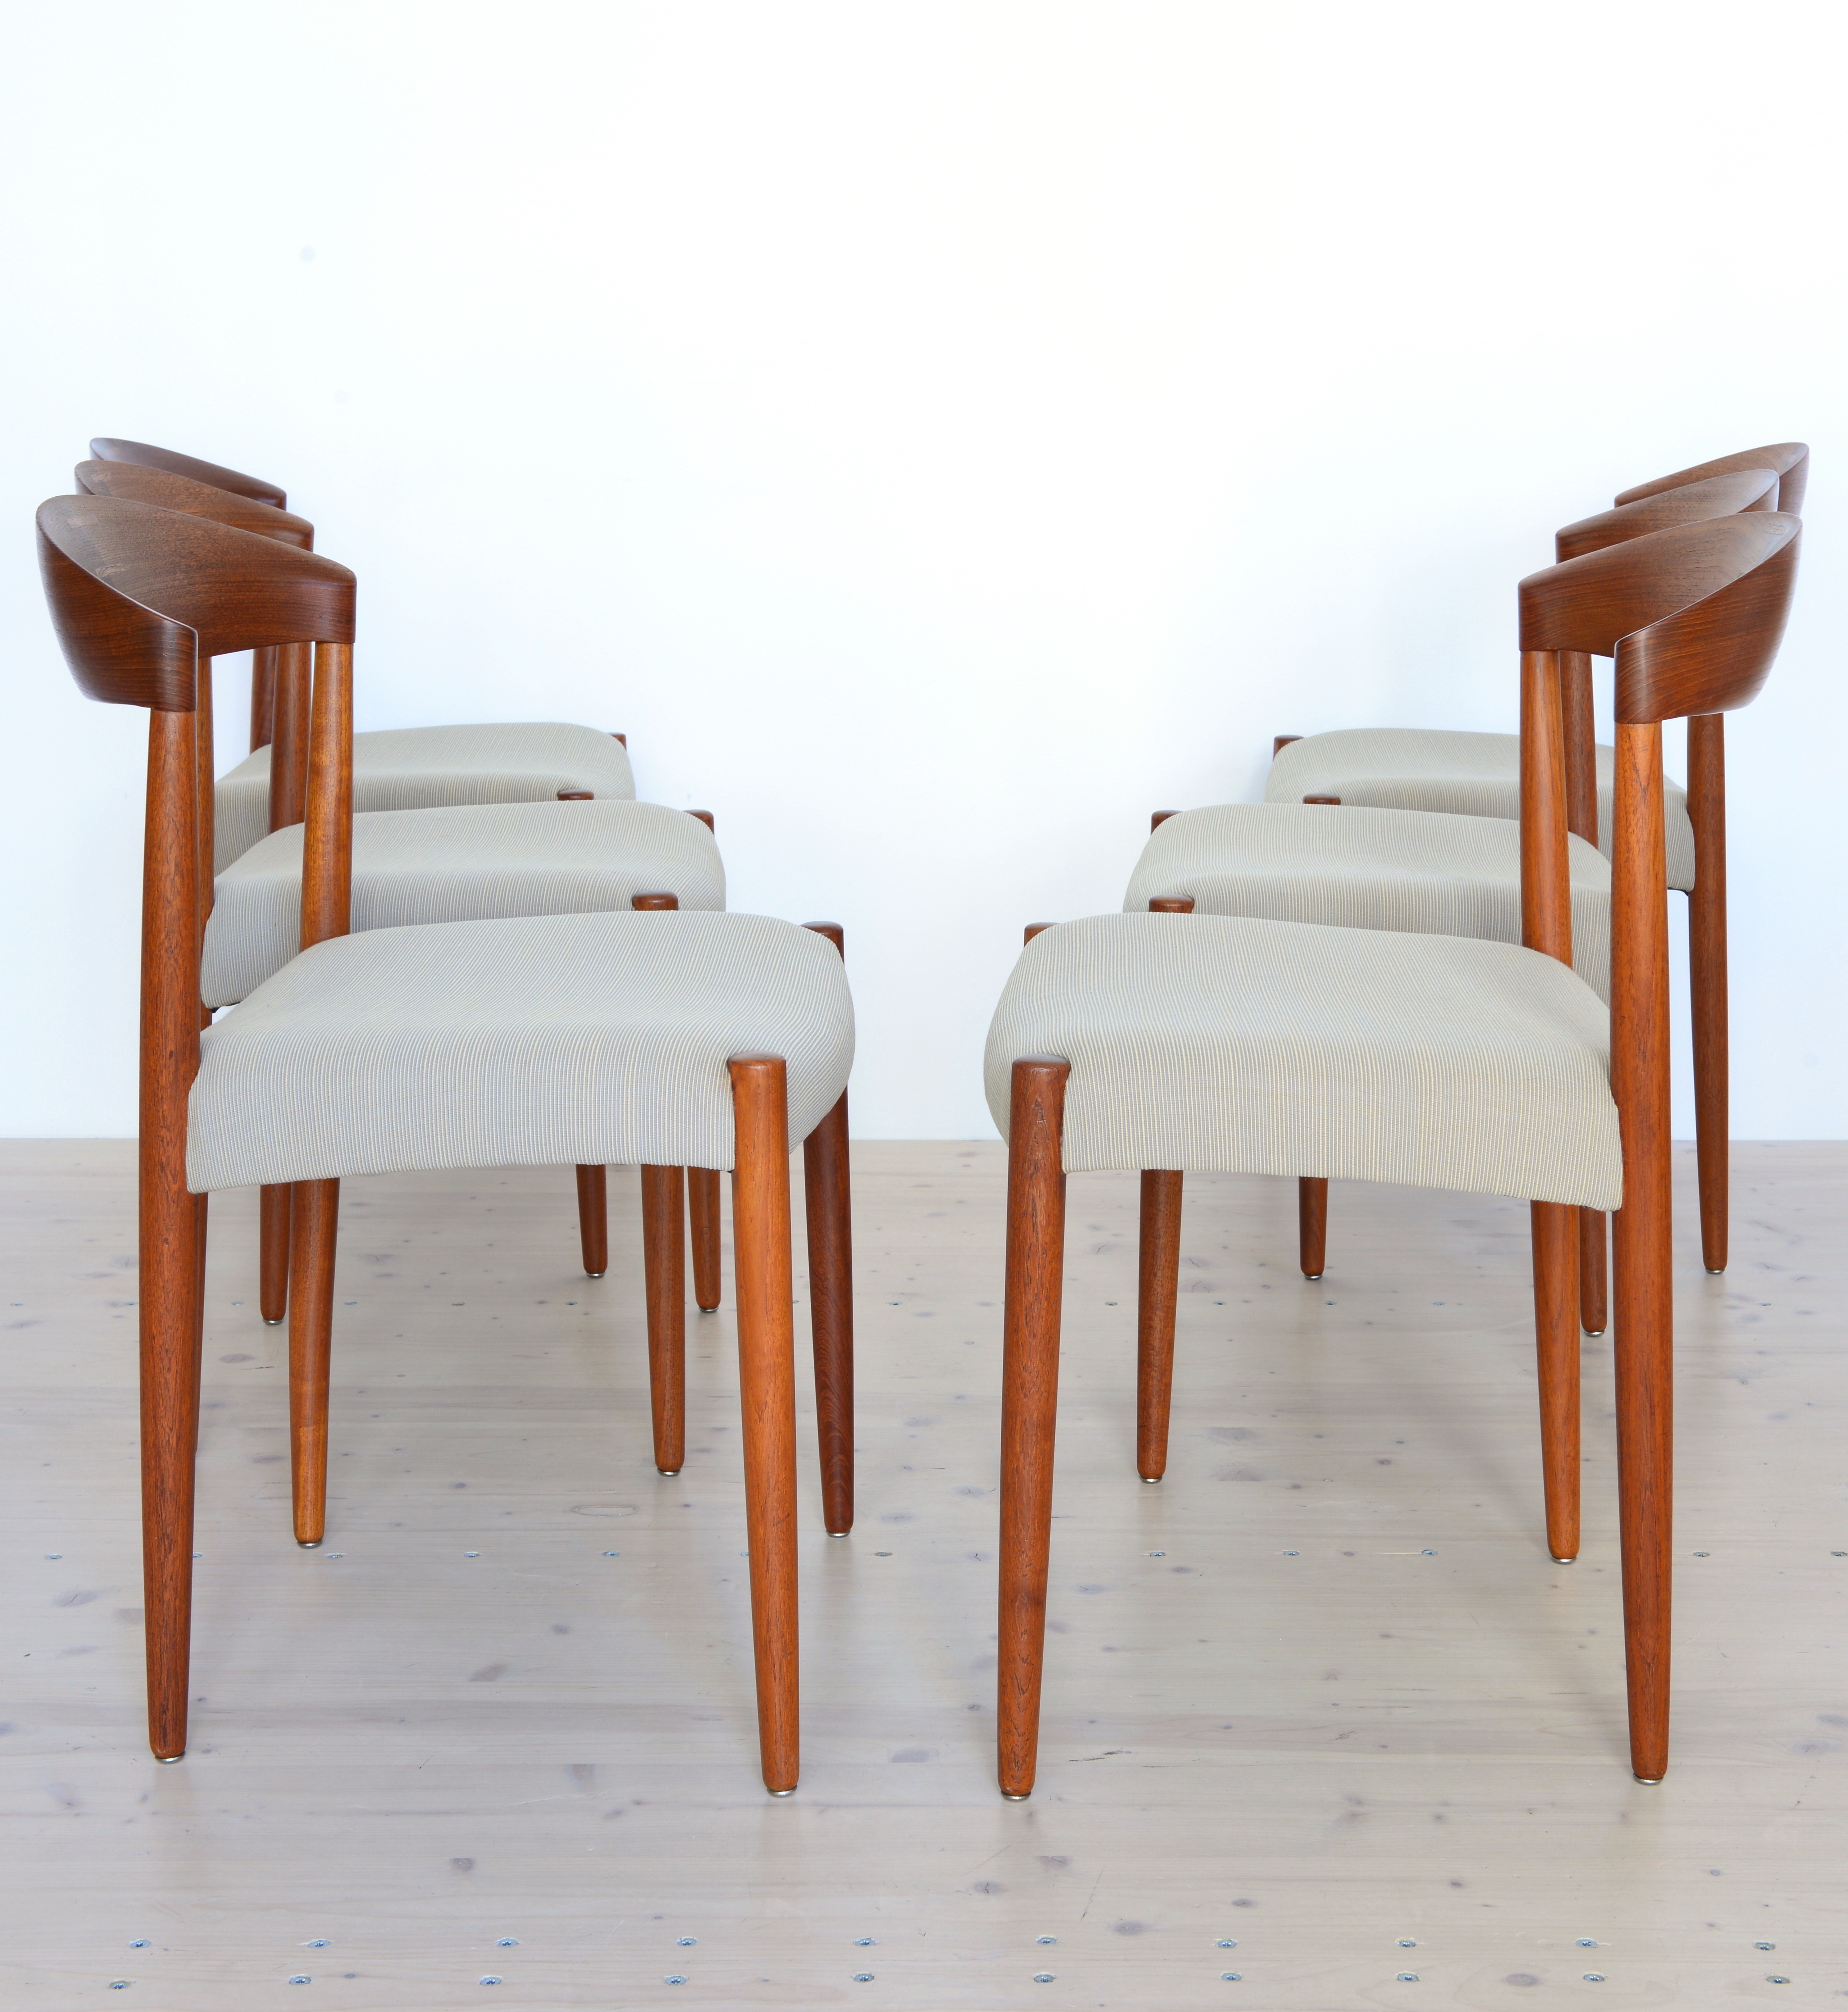 Knud Andersen Chairs 1960s Aarhus Denmark heyday möbel Mid-Century